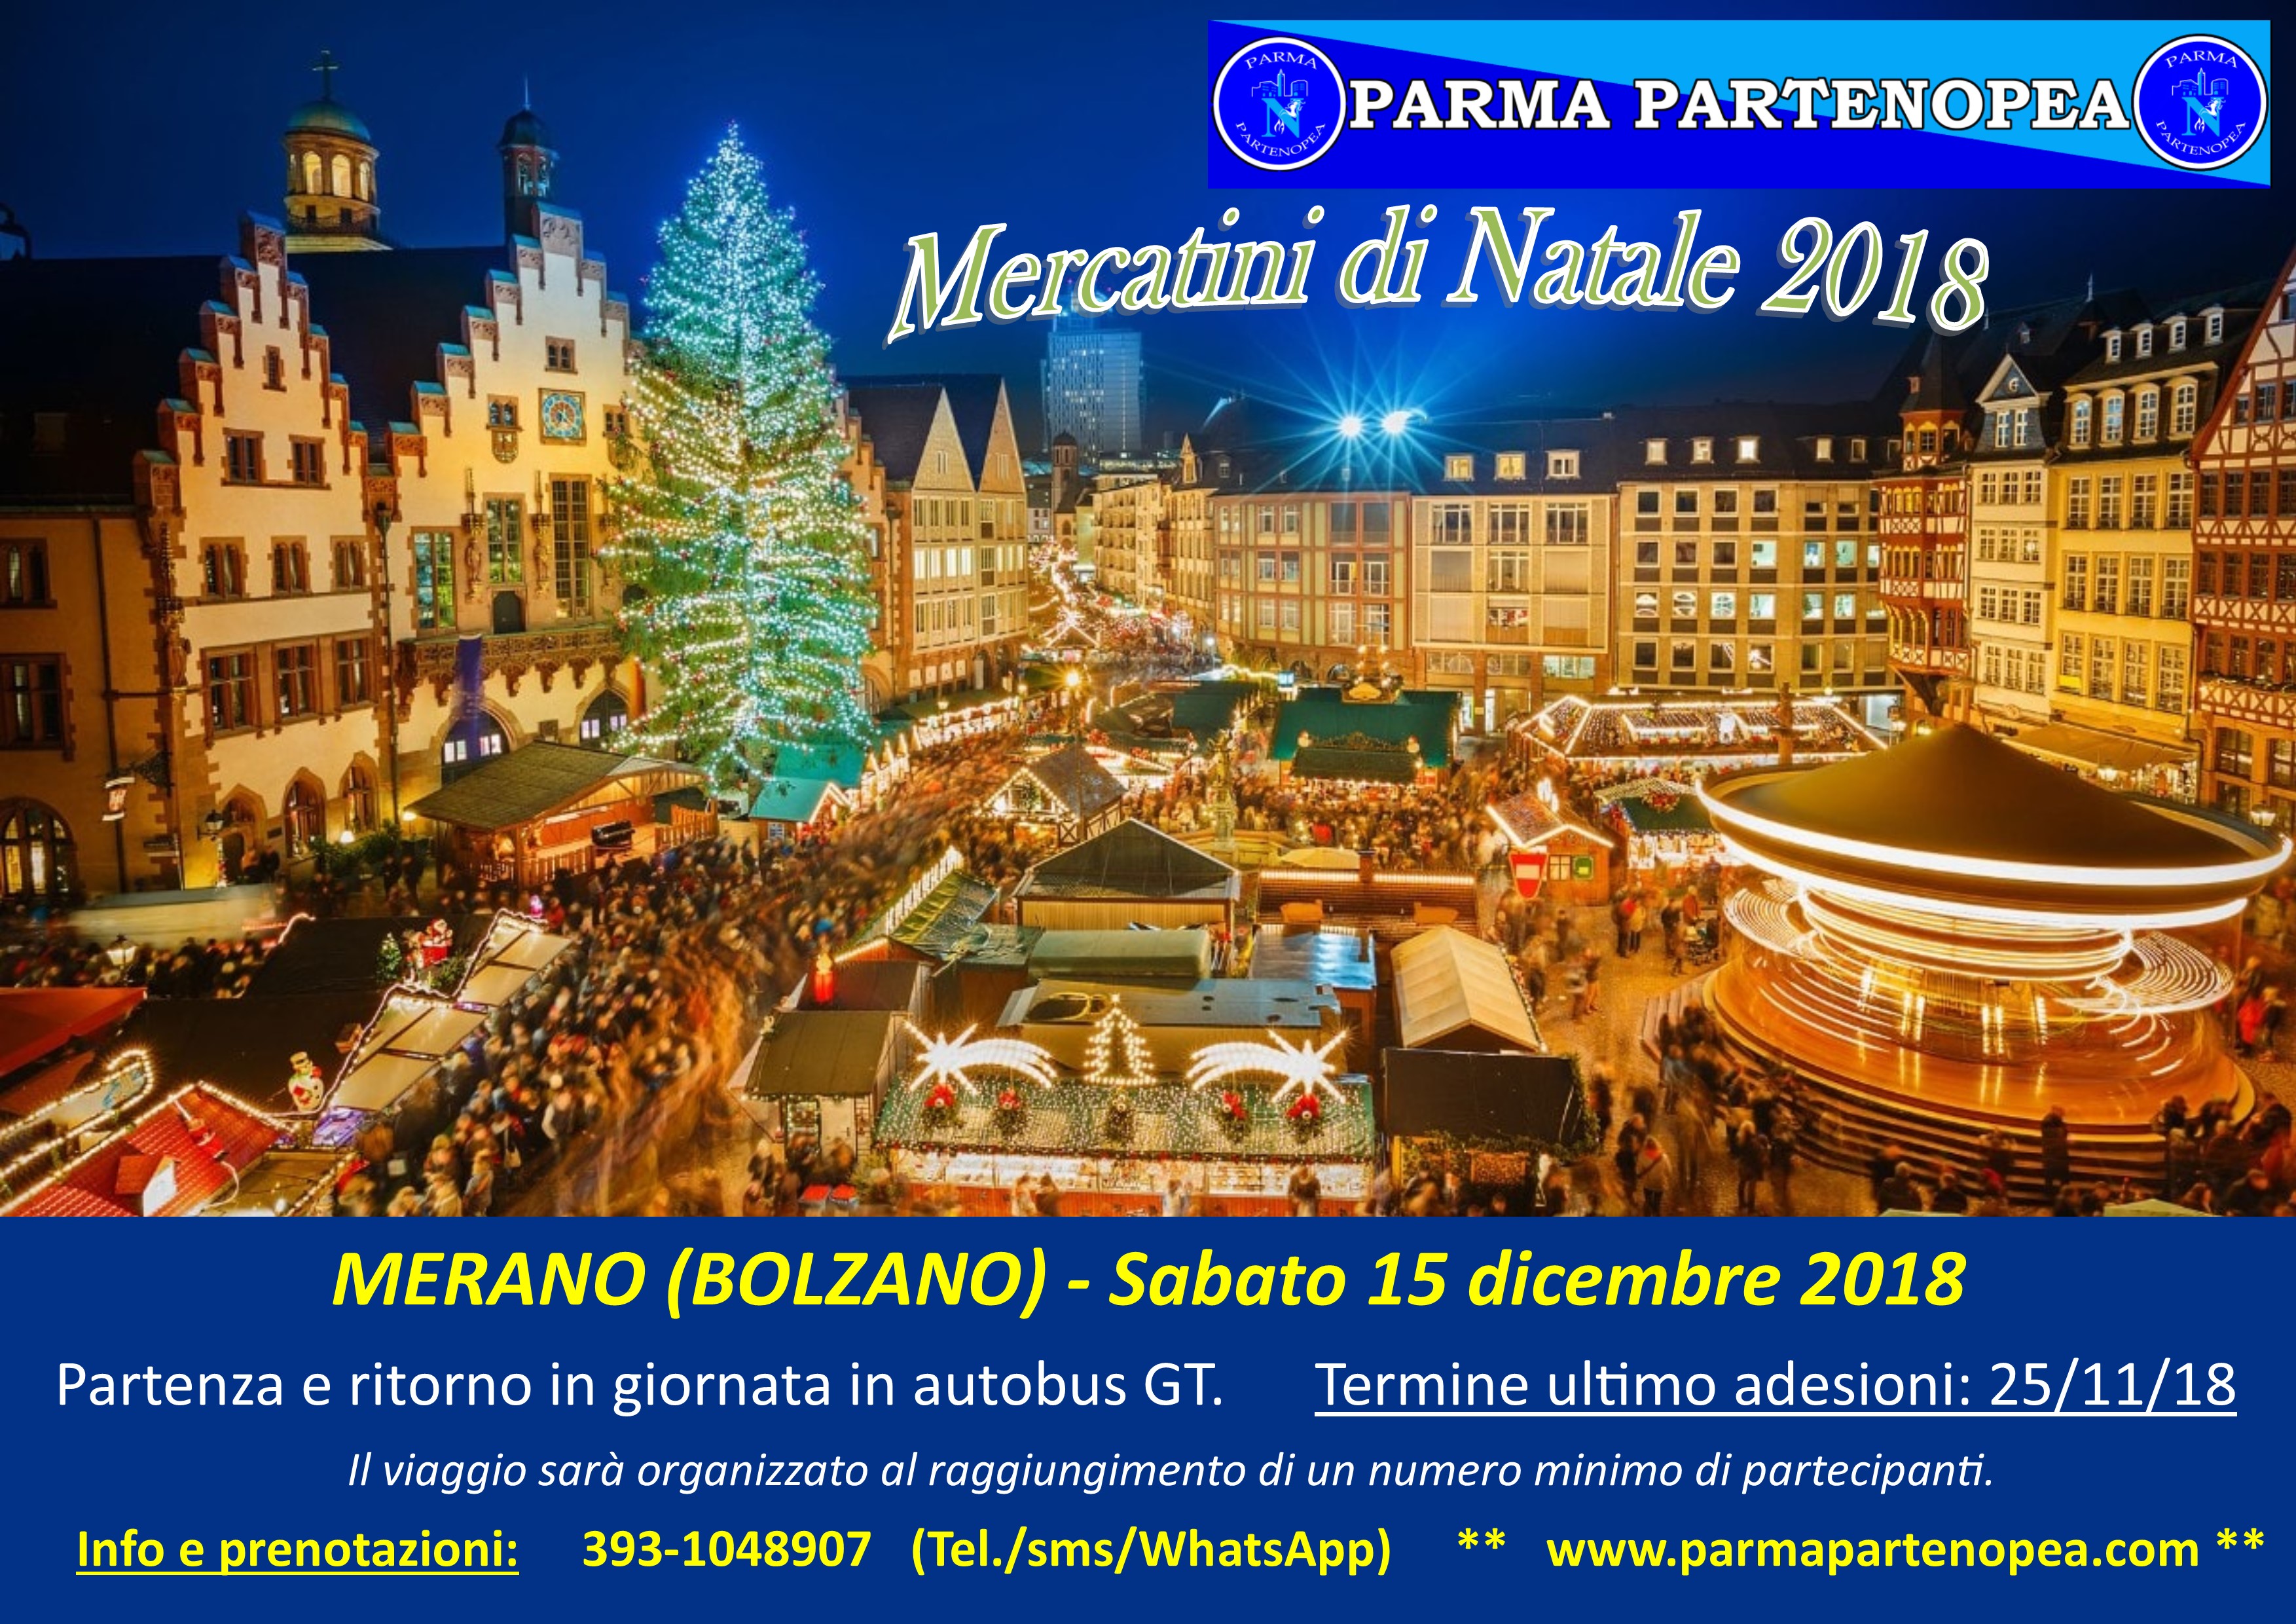 Foto Merano Mercatini Di Natale.Mercatini Di Natale 2018 A Merano Bolzano Con Parma Partenopea Sabato 15 Dicembre 2018 Parma Partenopea